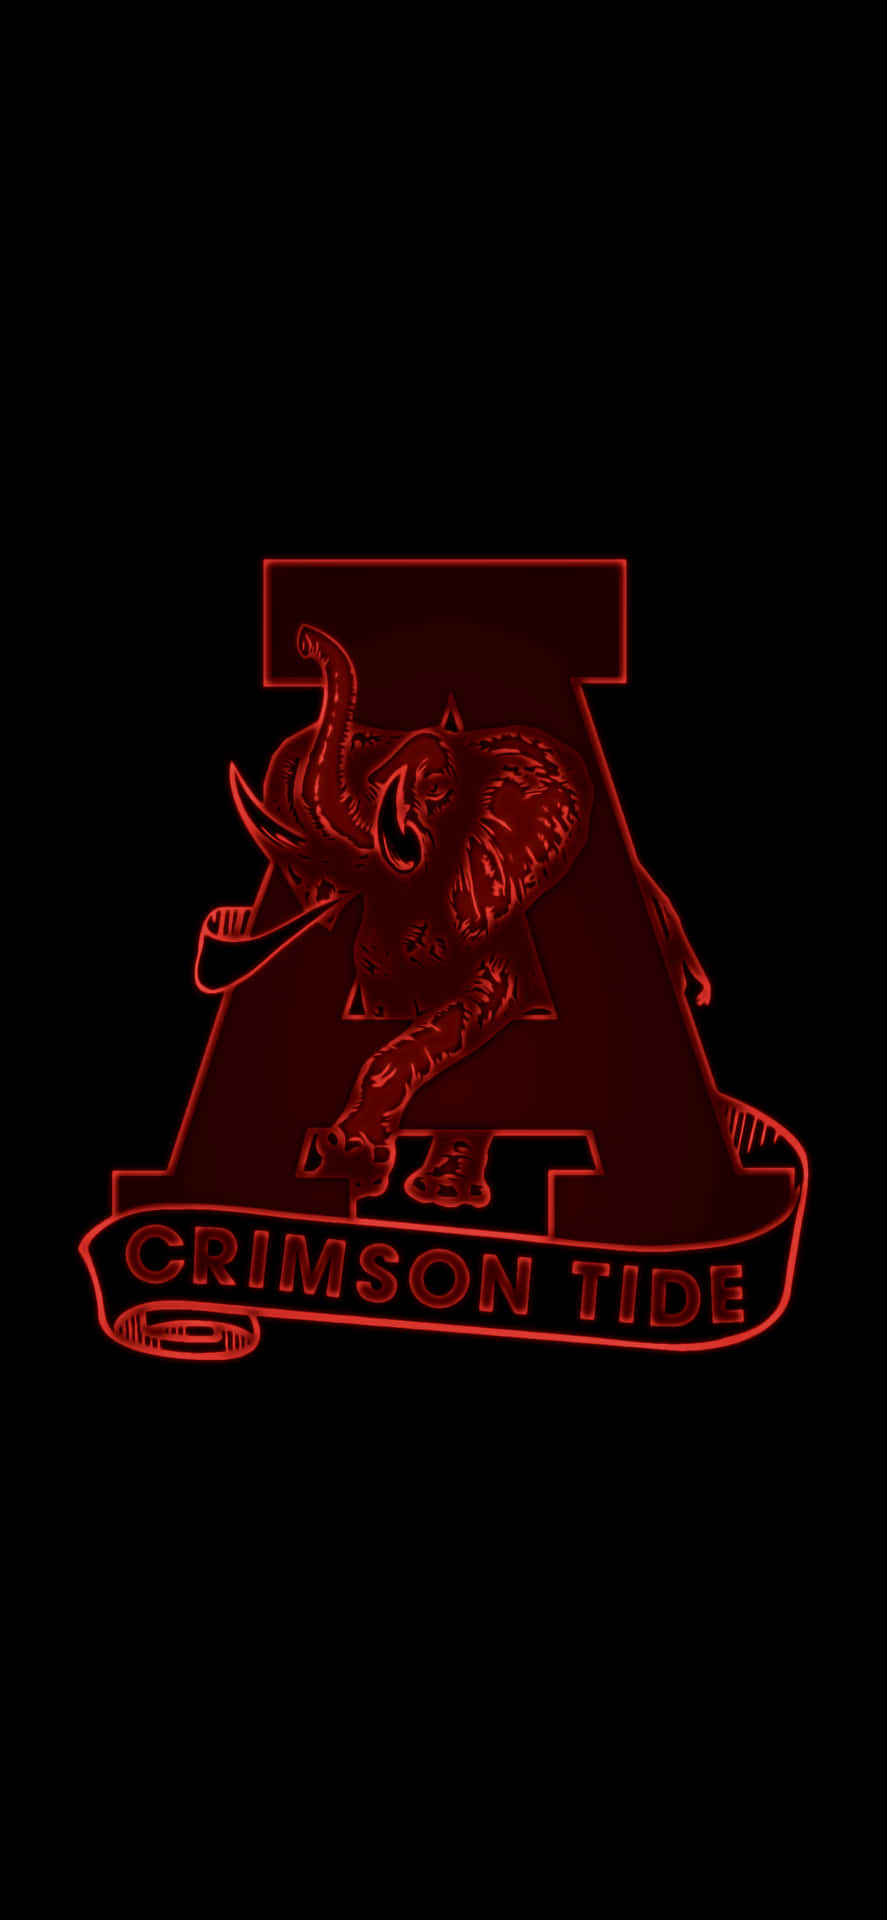 Crimson Tide Logo On A Black Background Wallpaper